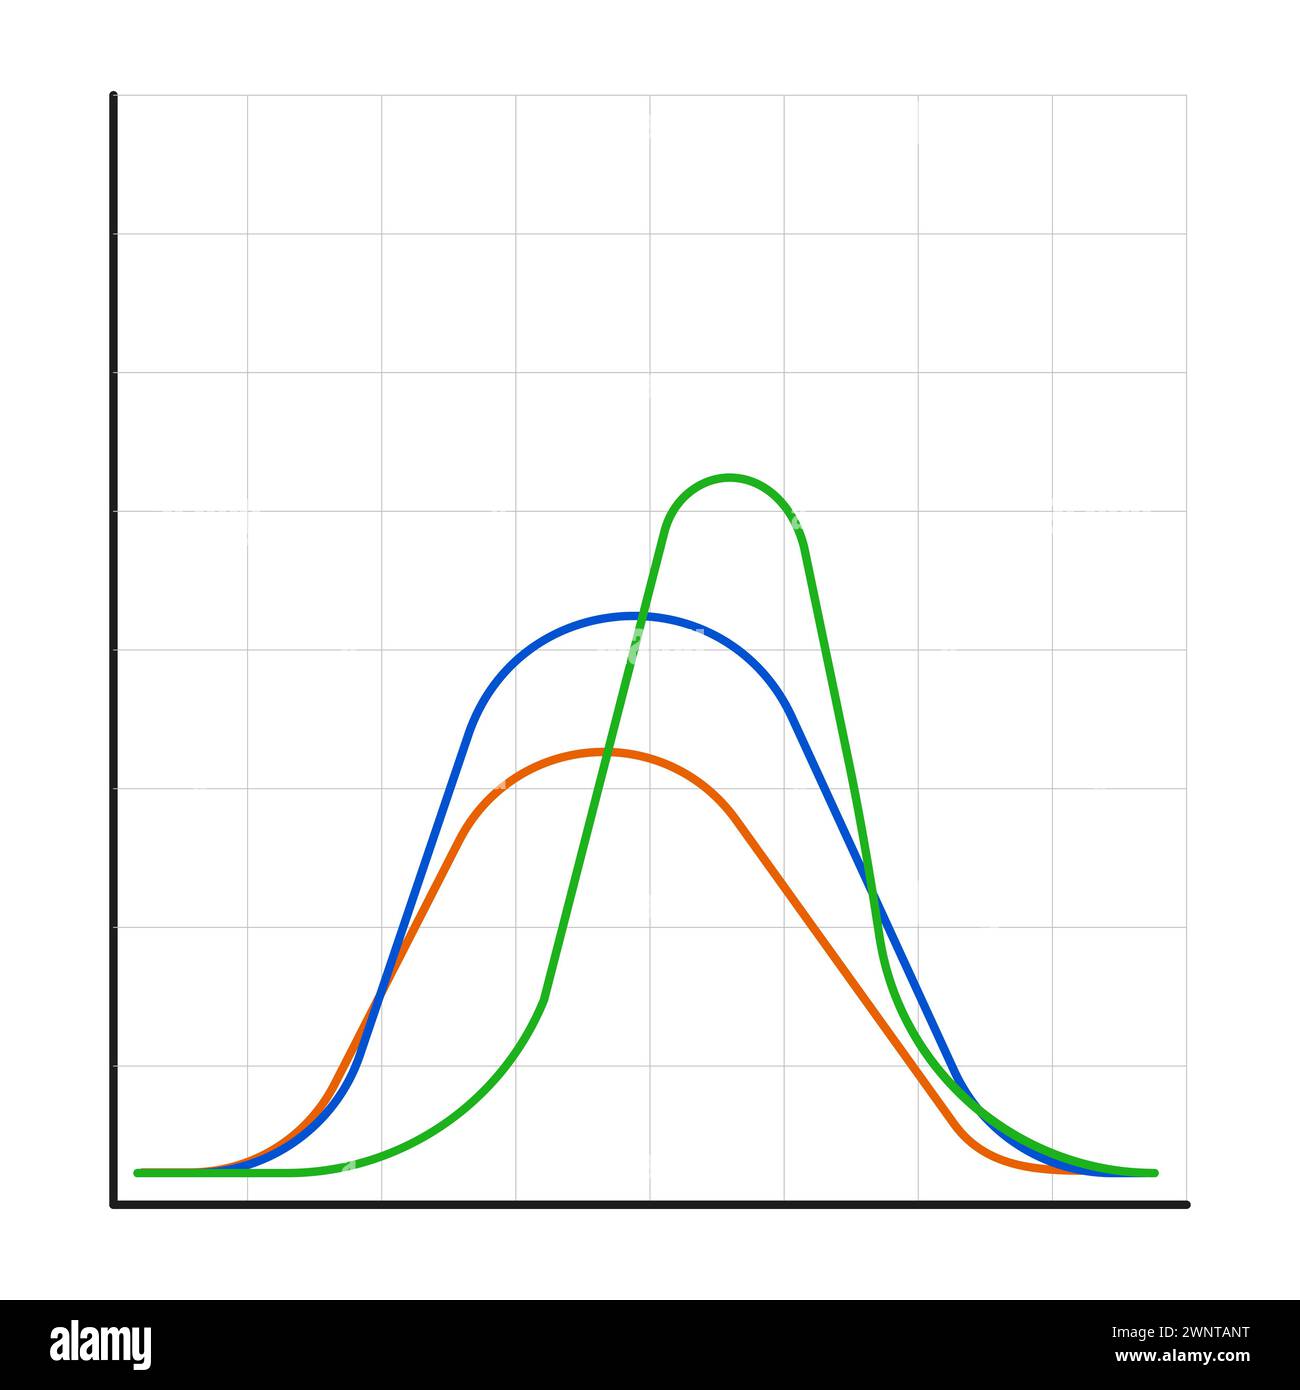 Distribuzione Gauss. Teoria della probabilità matematica. Distribuzione normale standard. Curva del grafico a campana gaussiana. Concetto di business e marketing. Illustrazione vettoriale Illustrazione Vettoriale